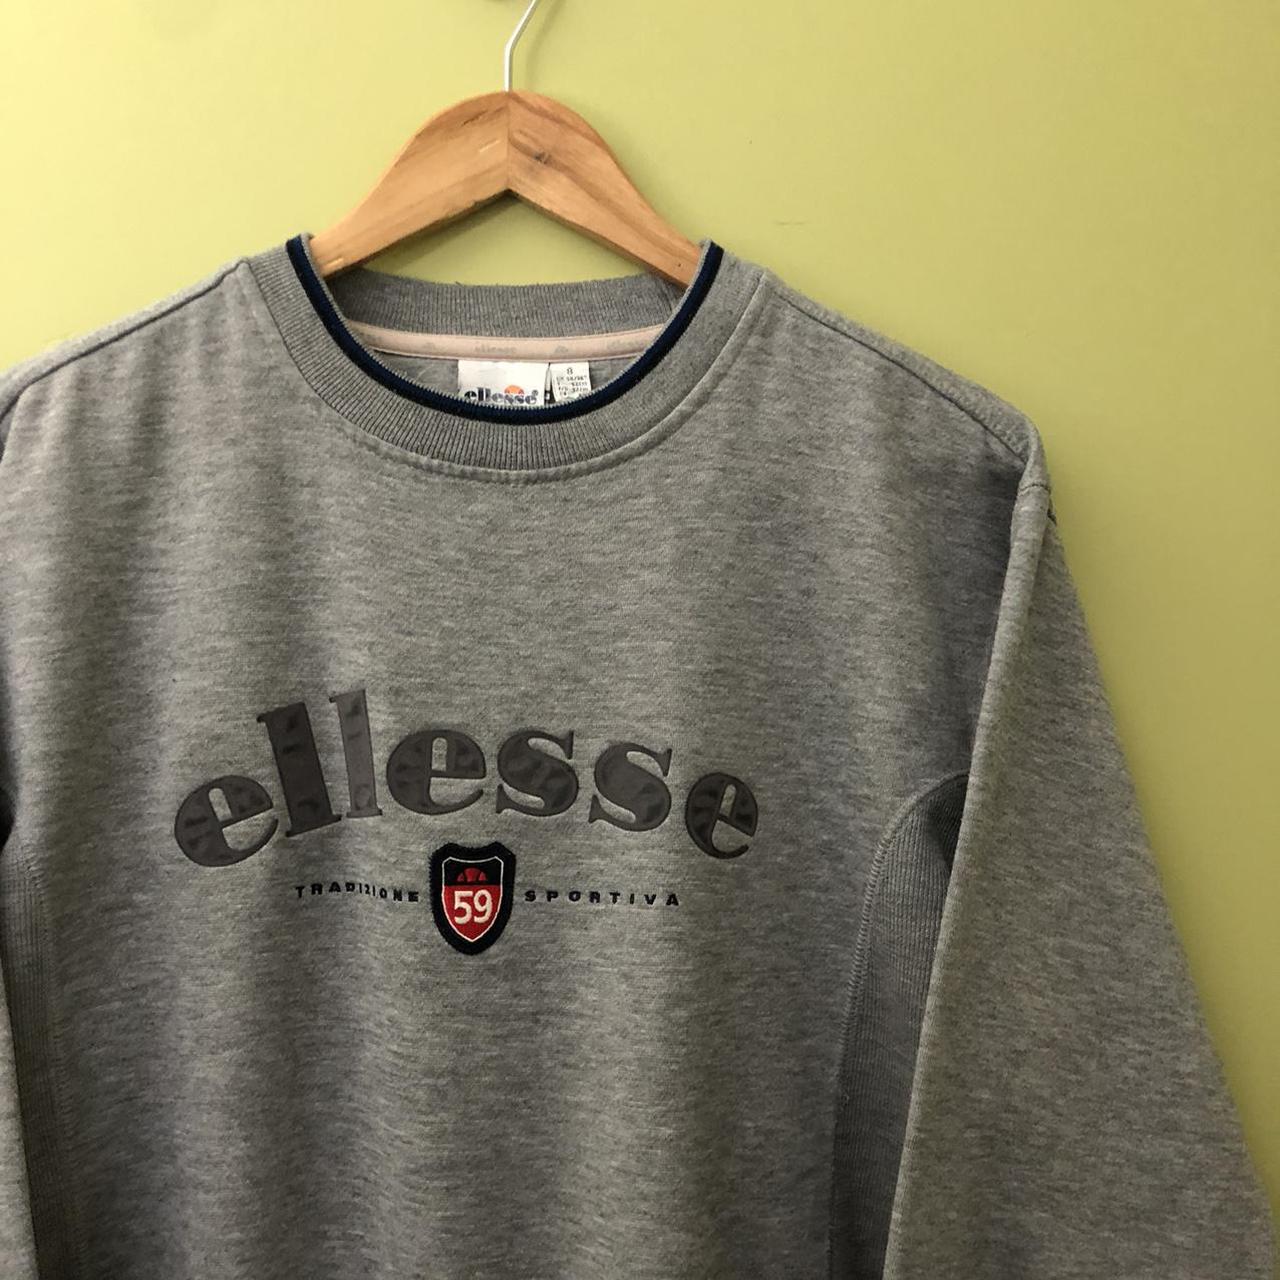 Vintage Ellesse Pullover Sweatshirt in Grey.... - Depop